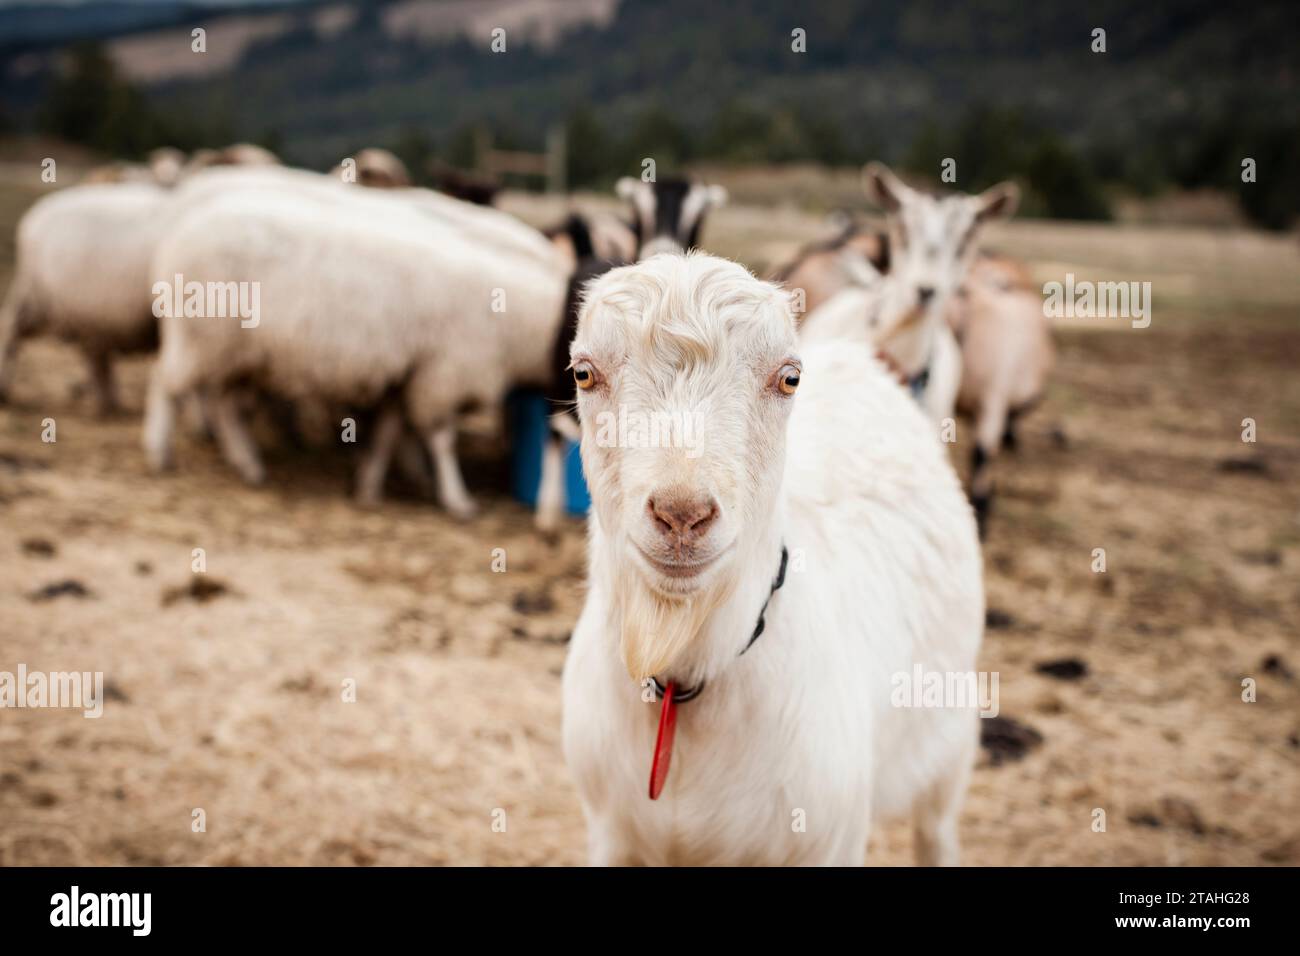 lamancha dairy goat looks into the camera Stock Photo